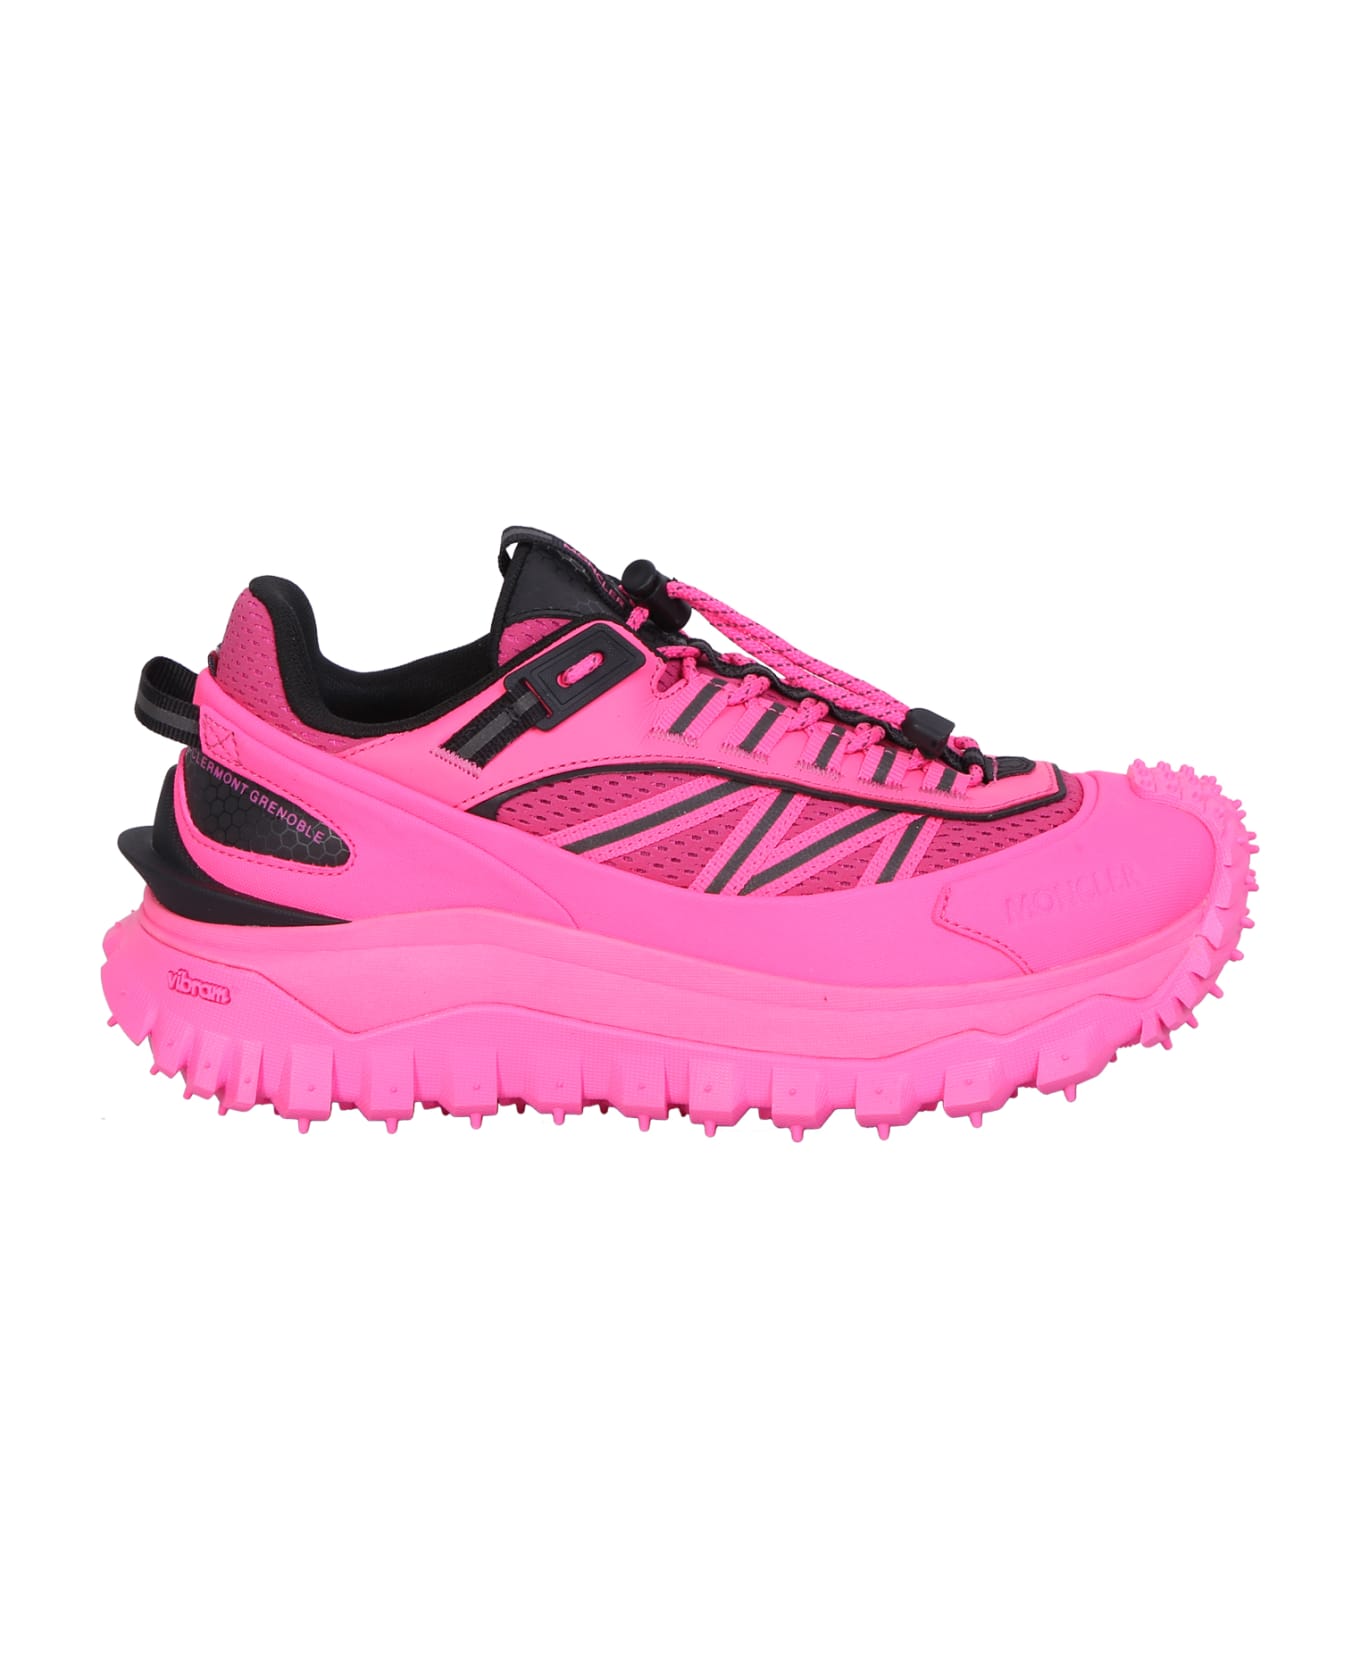 Moncler Grenoble Grenoble Trailgrip Gtx Sneakers - Pink